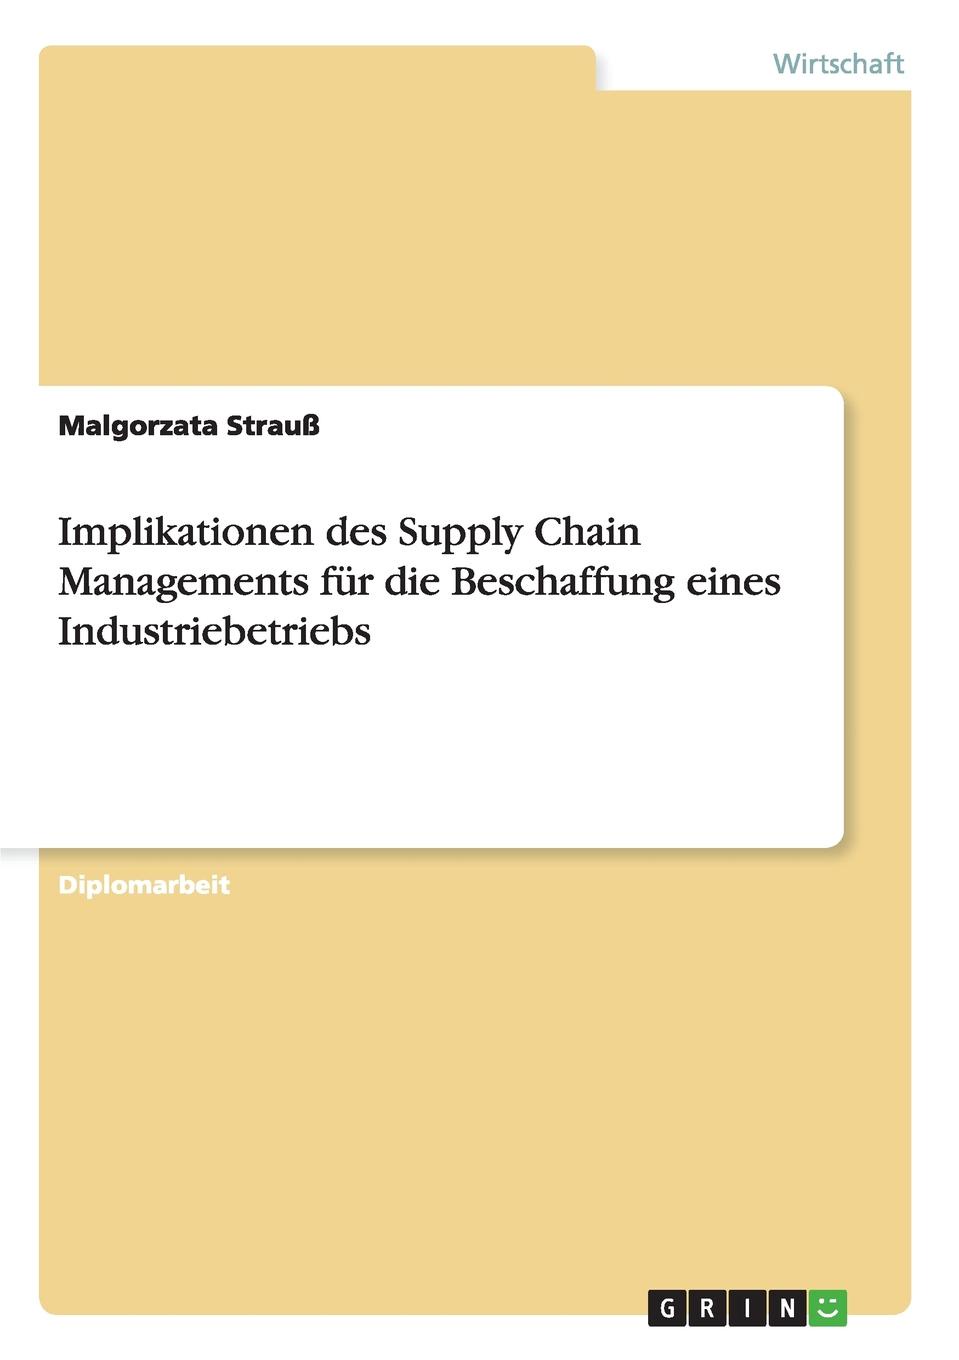 фото Implikationen des Supply Chain Managements fur die Beschaffung eines Industriebetriebs